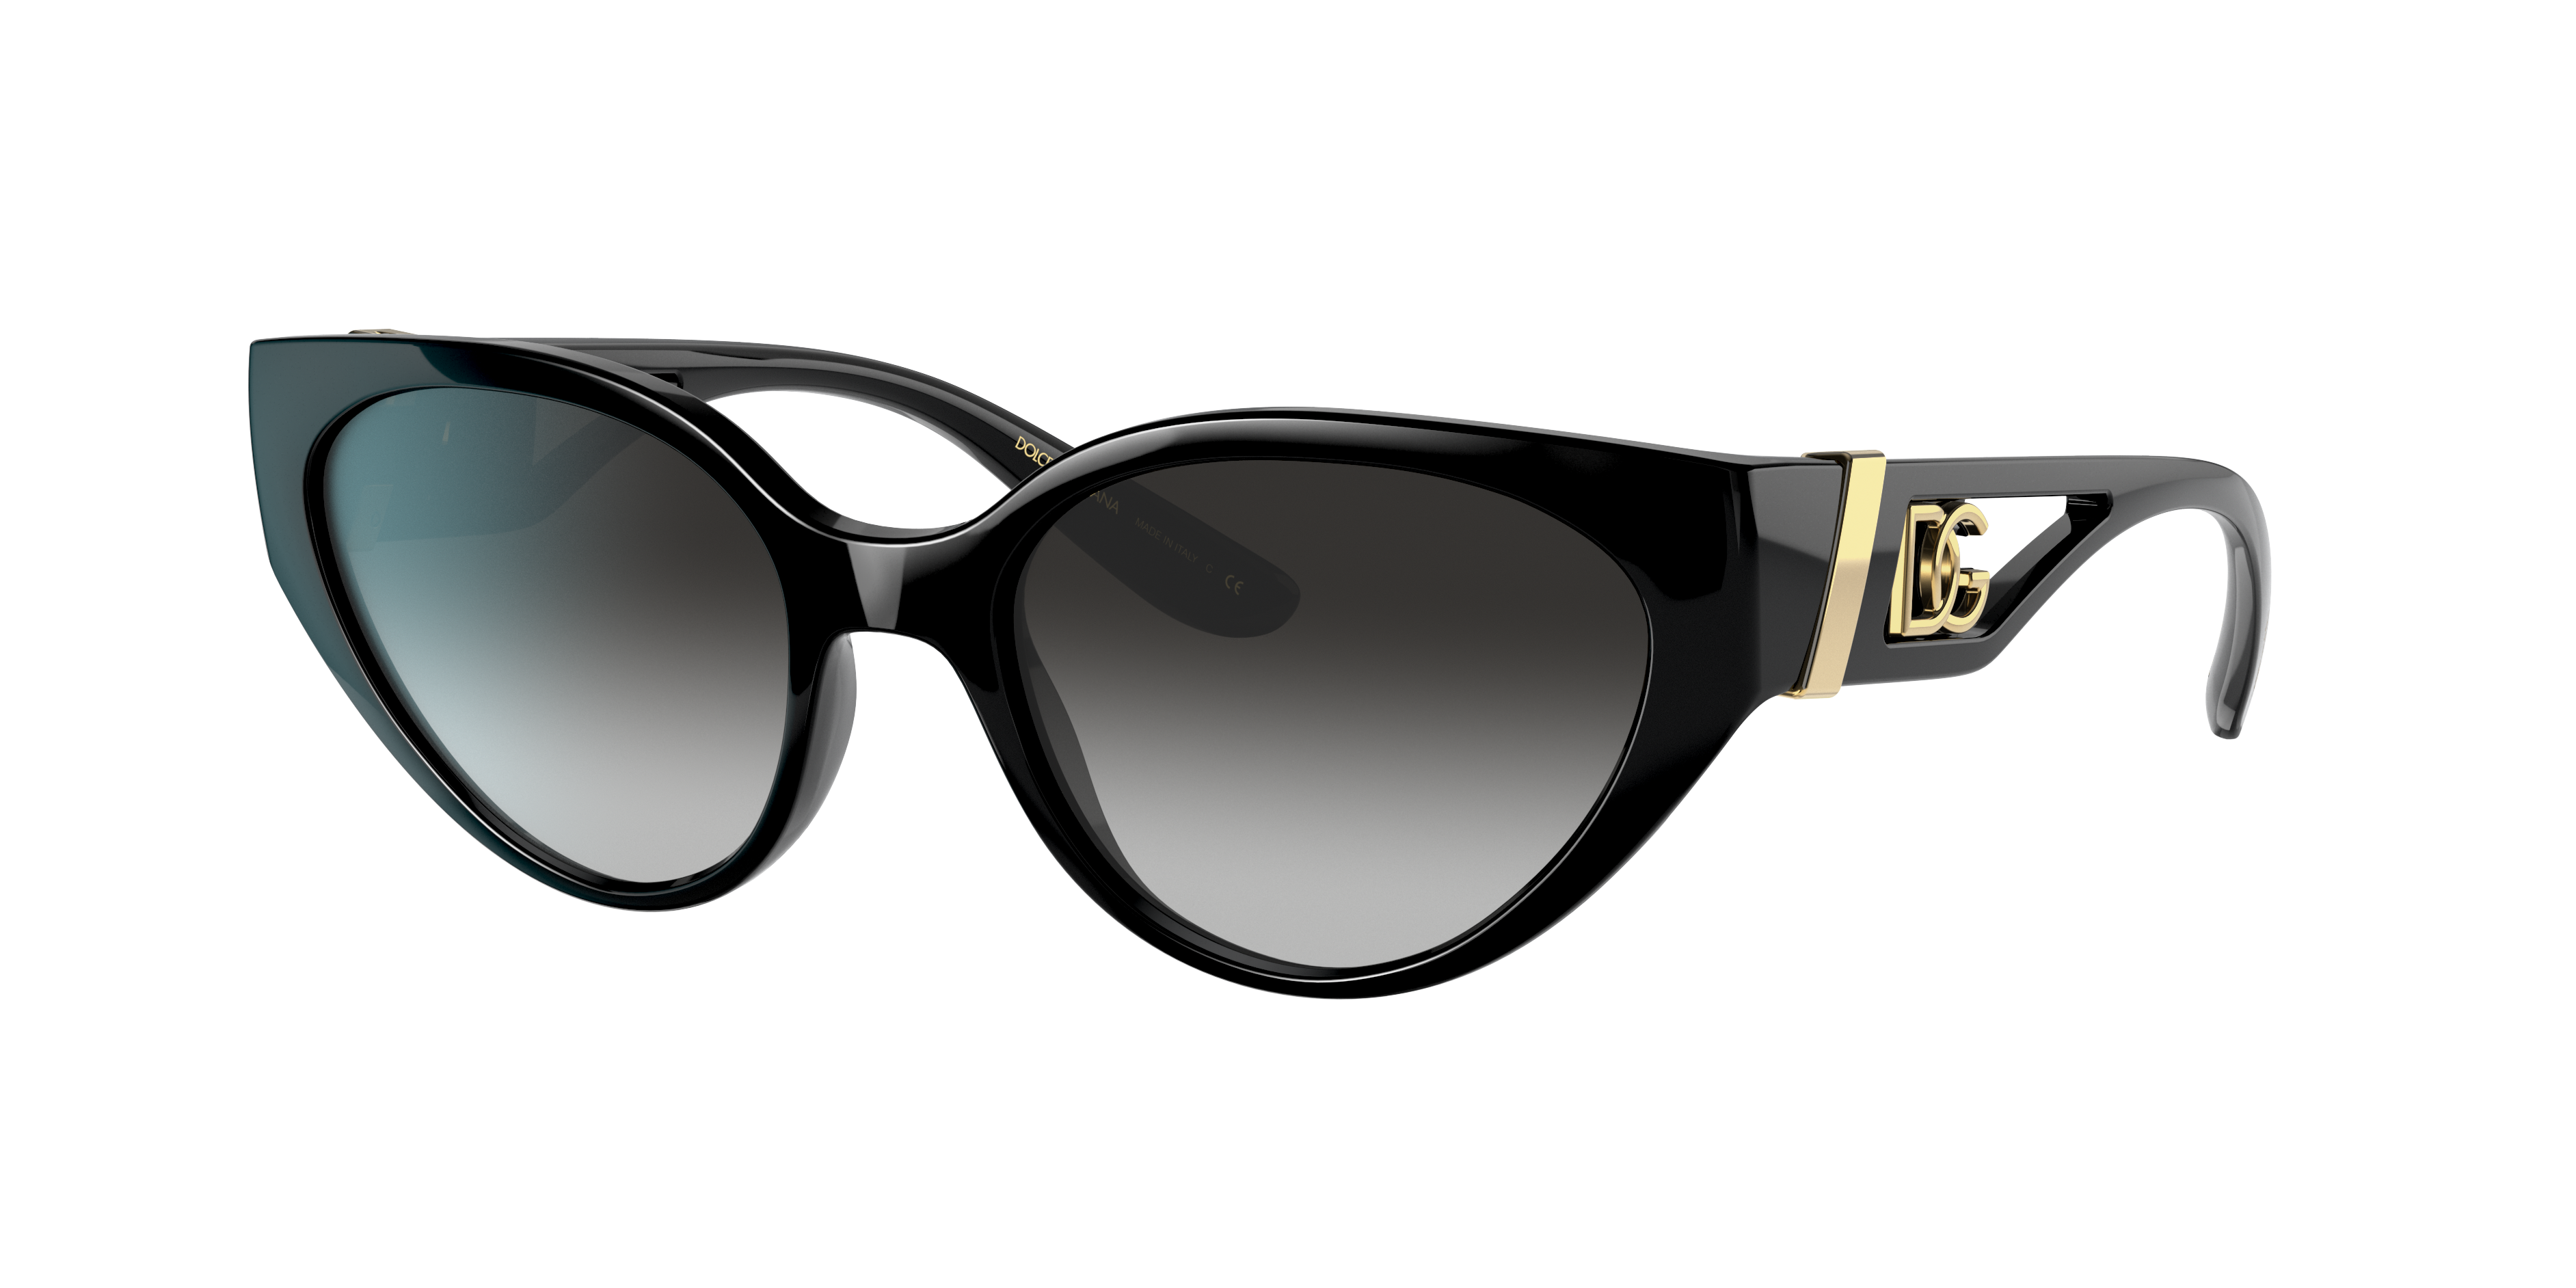 Consulte nosso catálogo de Óculos de Sol Dolce e Gabbana Eyewear com diversos modelos e preços para sua escolha.